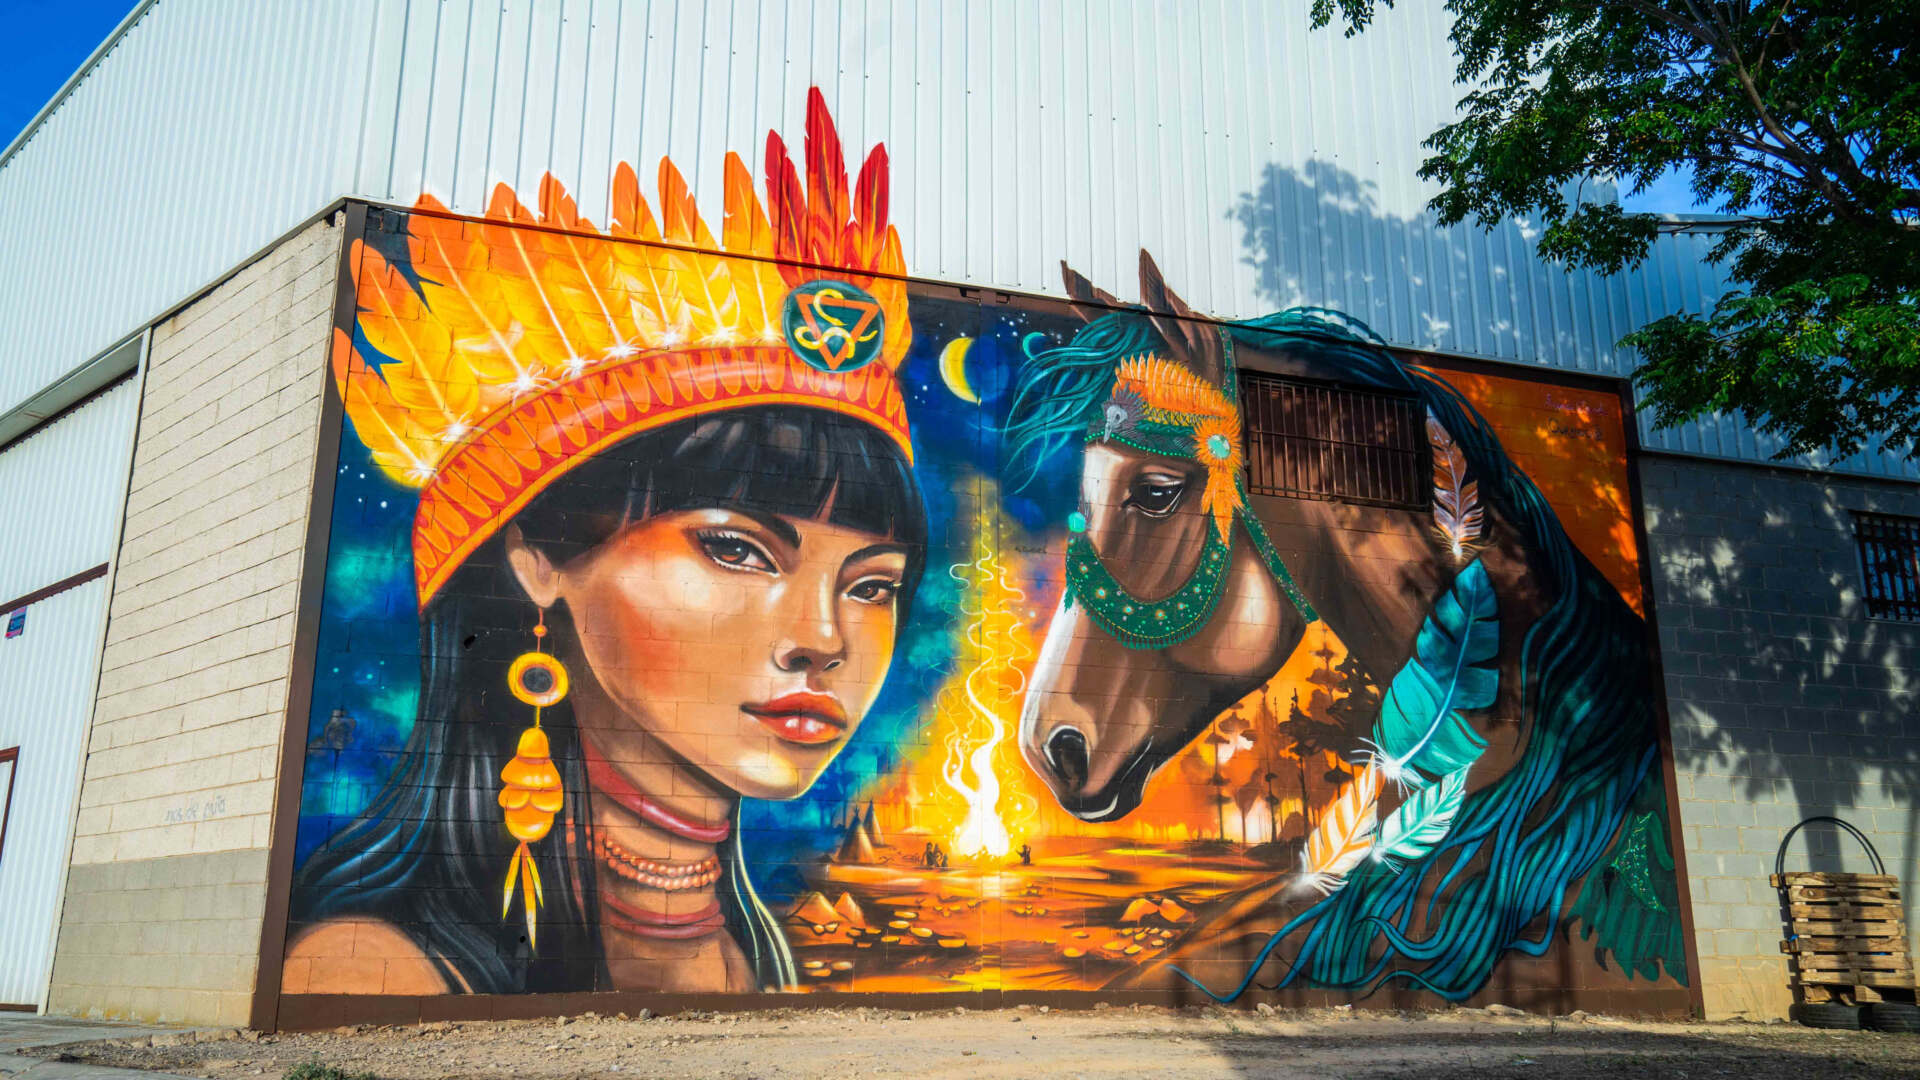 El Torrefarrera Street Art Festival ja té guanyador